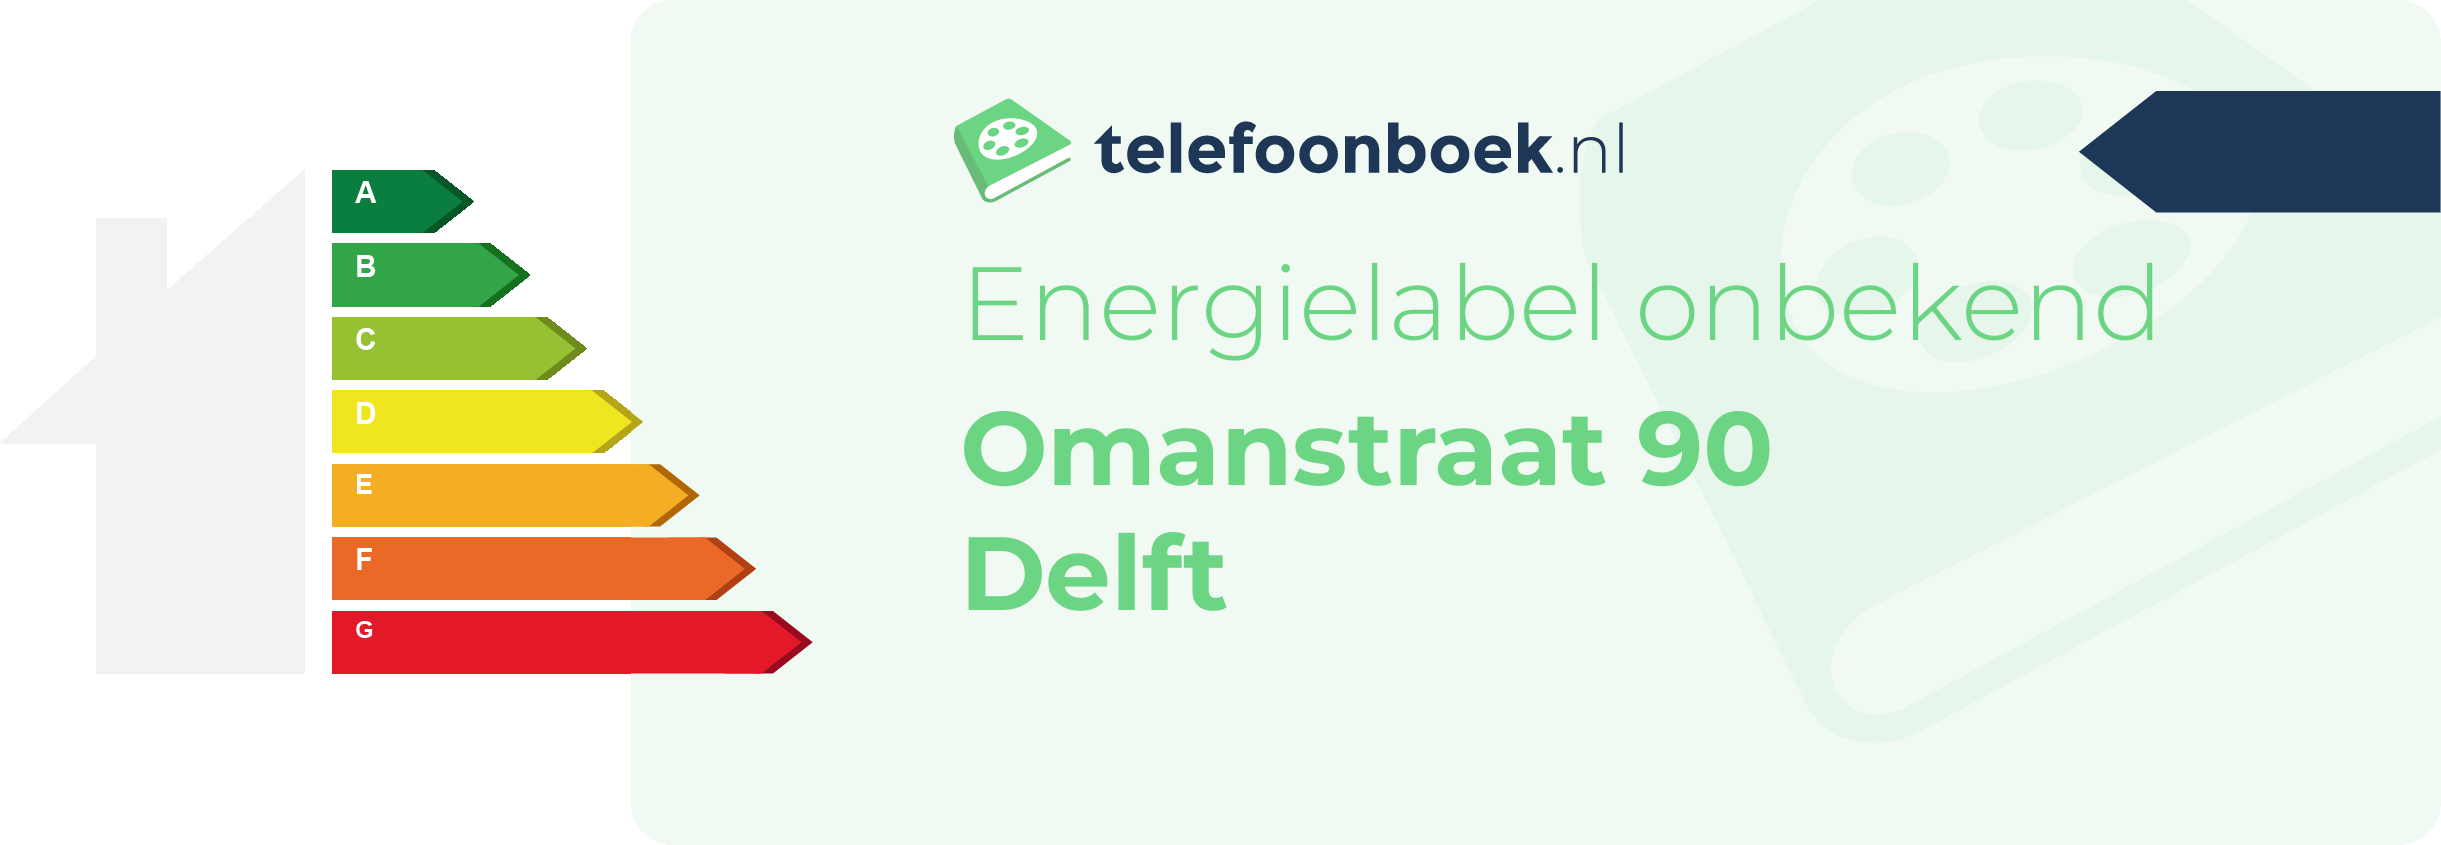 Energielabel Omanstraat 90 Delft